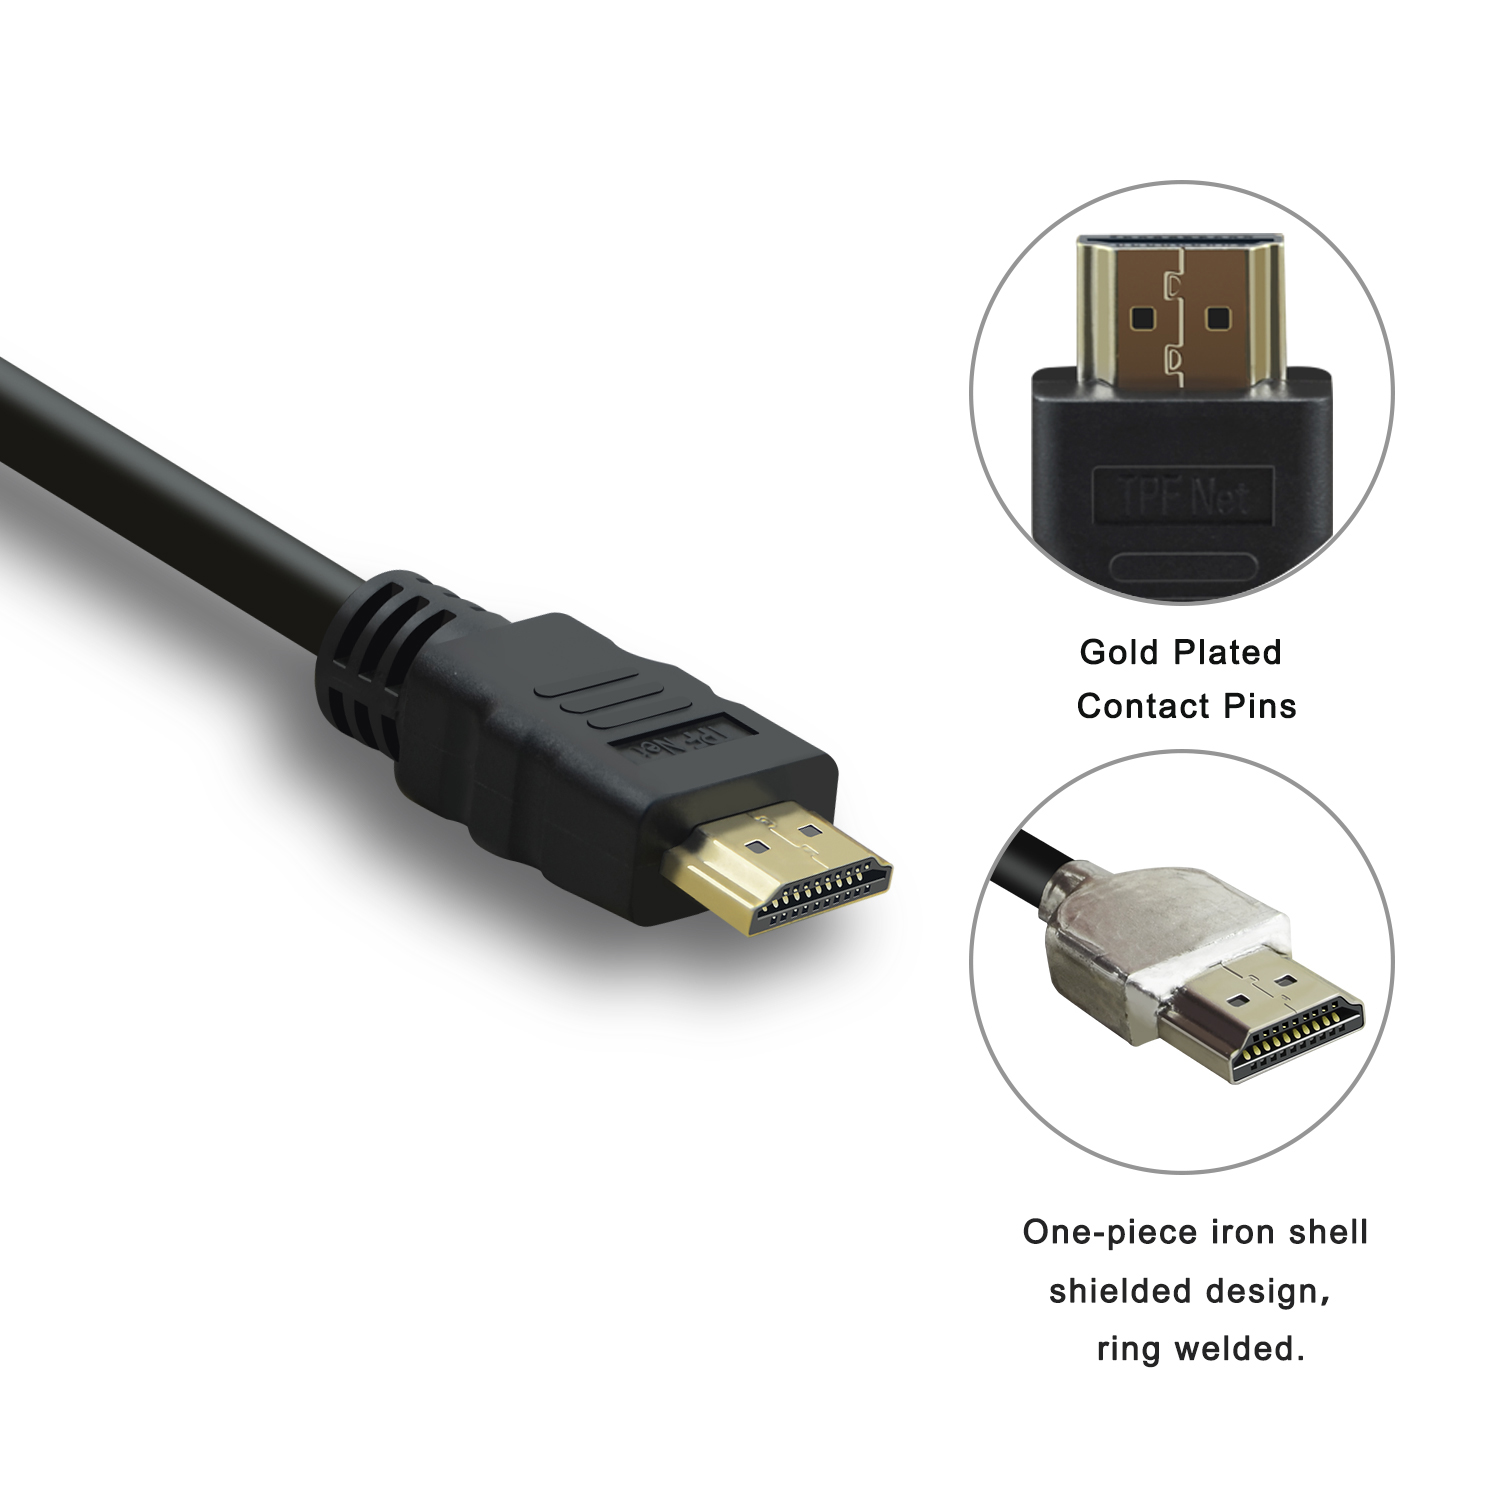 0,5m mit schwarz, Ethernet, Ultra Premium HD, TPFNET abwärtskompatibel, HDMI-Kabel 8K, HDMI-Kabel